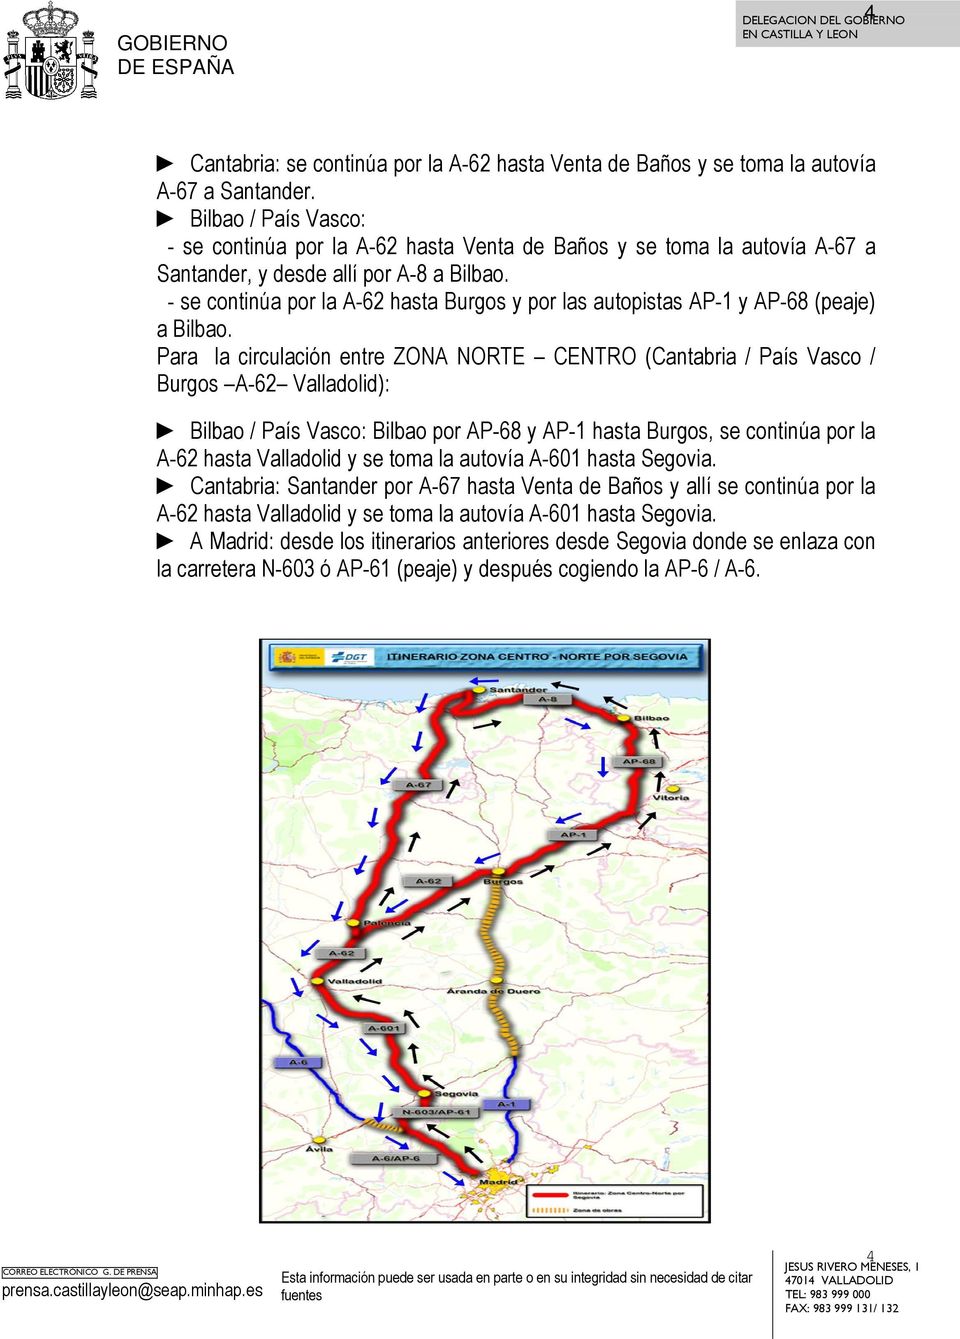 - se continúa por la A-62 hasta Burgos y por las autopistas AP-1 y AP-68 (peaje) a Bilbao.